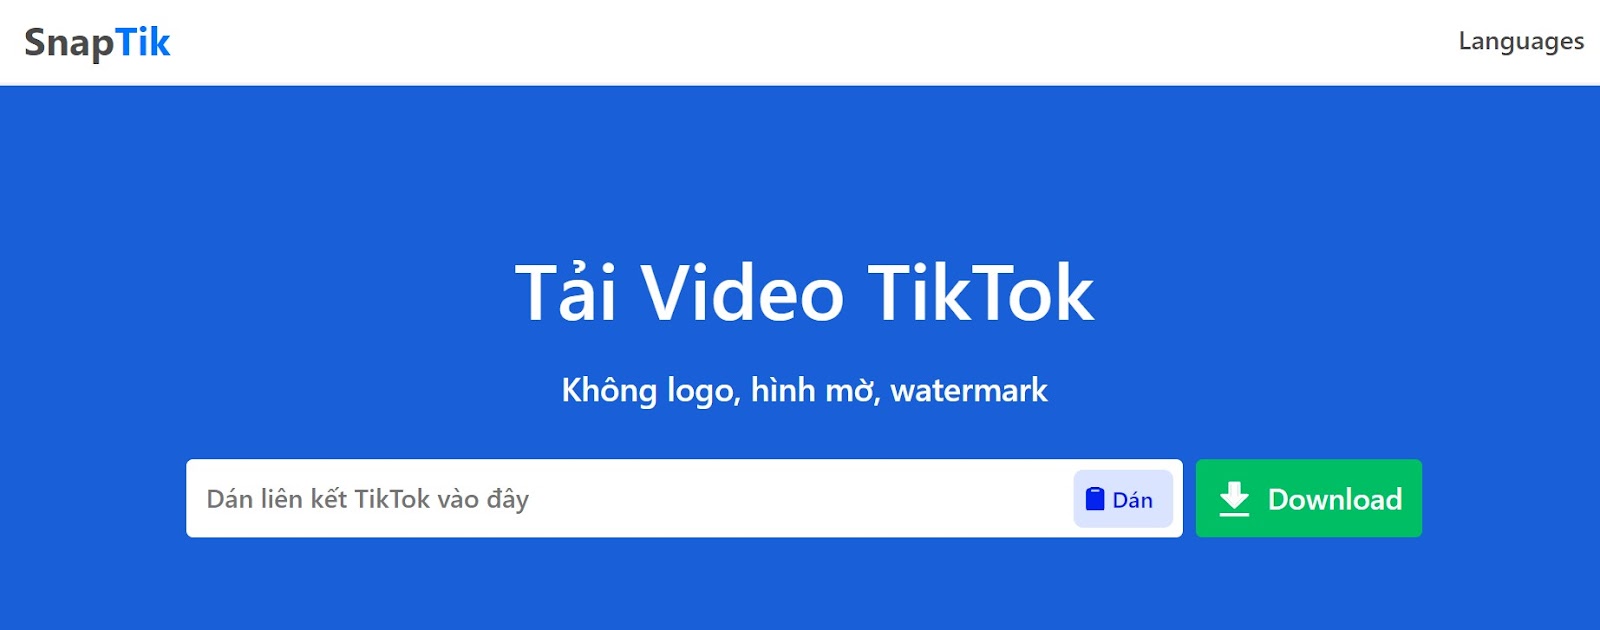 Snaptik cho phép bạn tải video tiktok không có logo